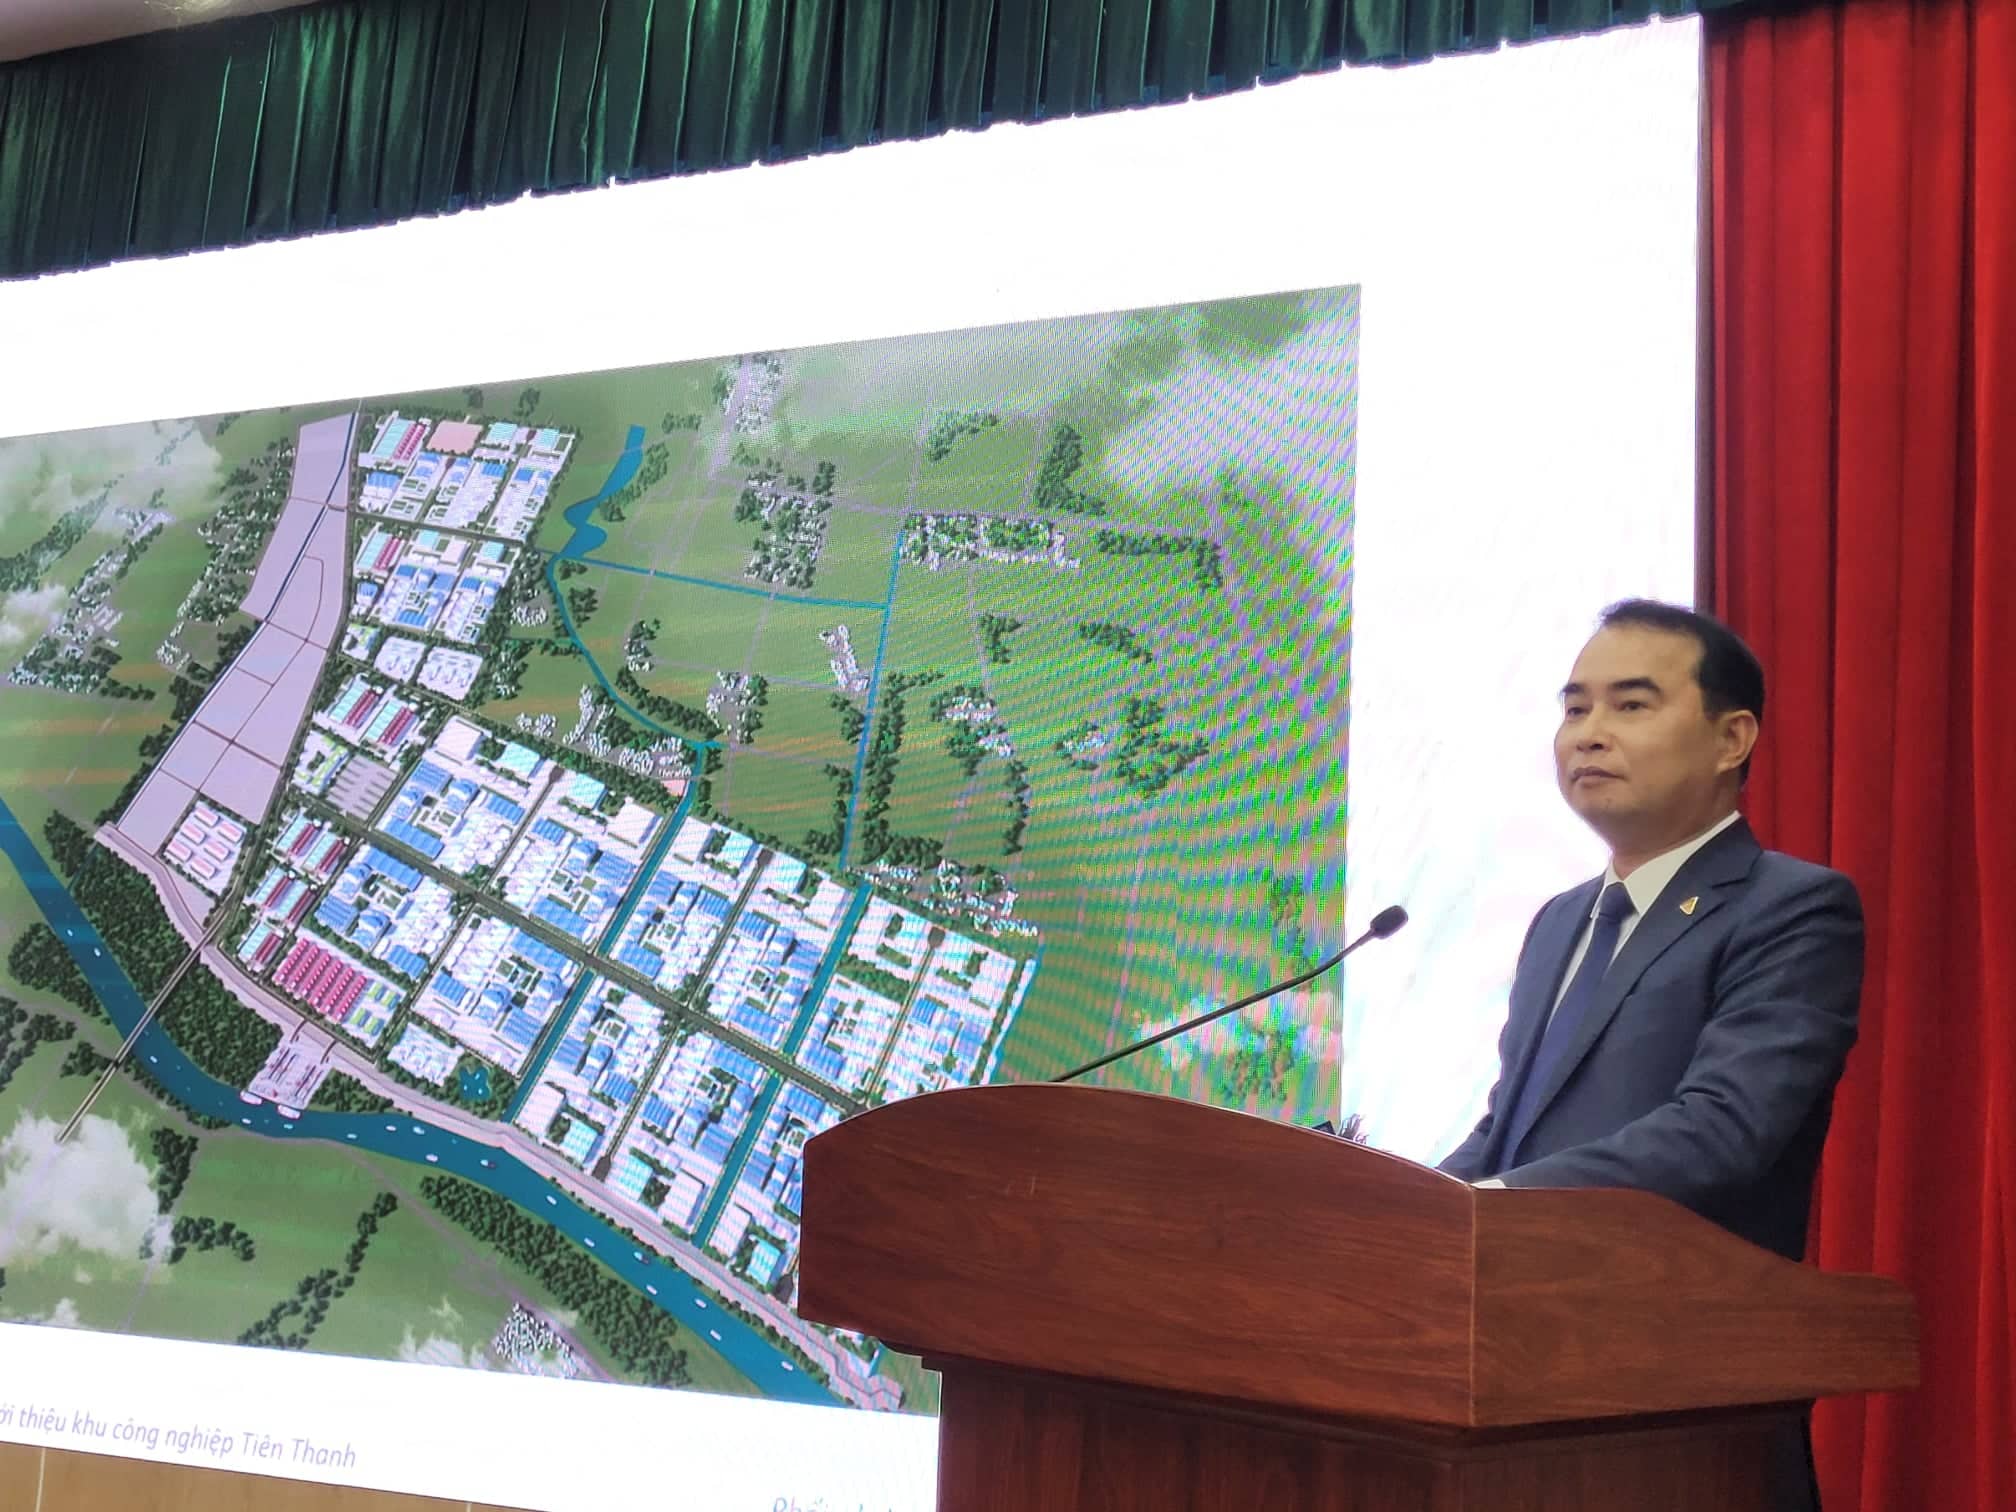 Ông Nguyễn Văn Bình, Chủ tịch HĐQT Công ty CP Đầu tư Khu công nghiệp Tiên Thanh thông tin về Dự án